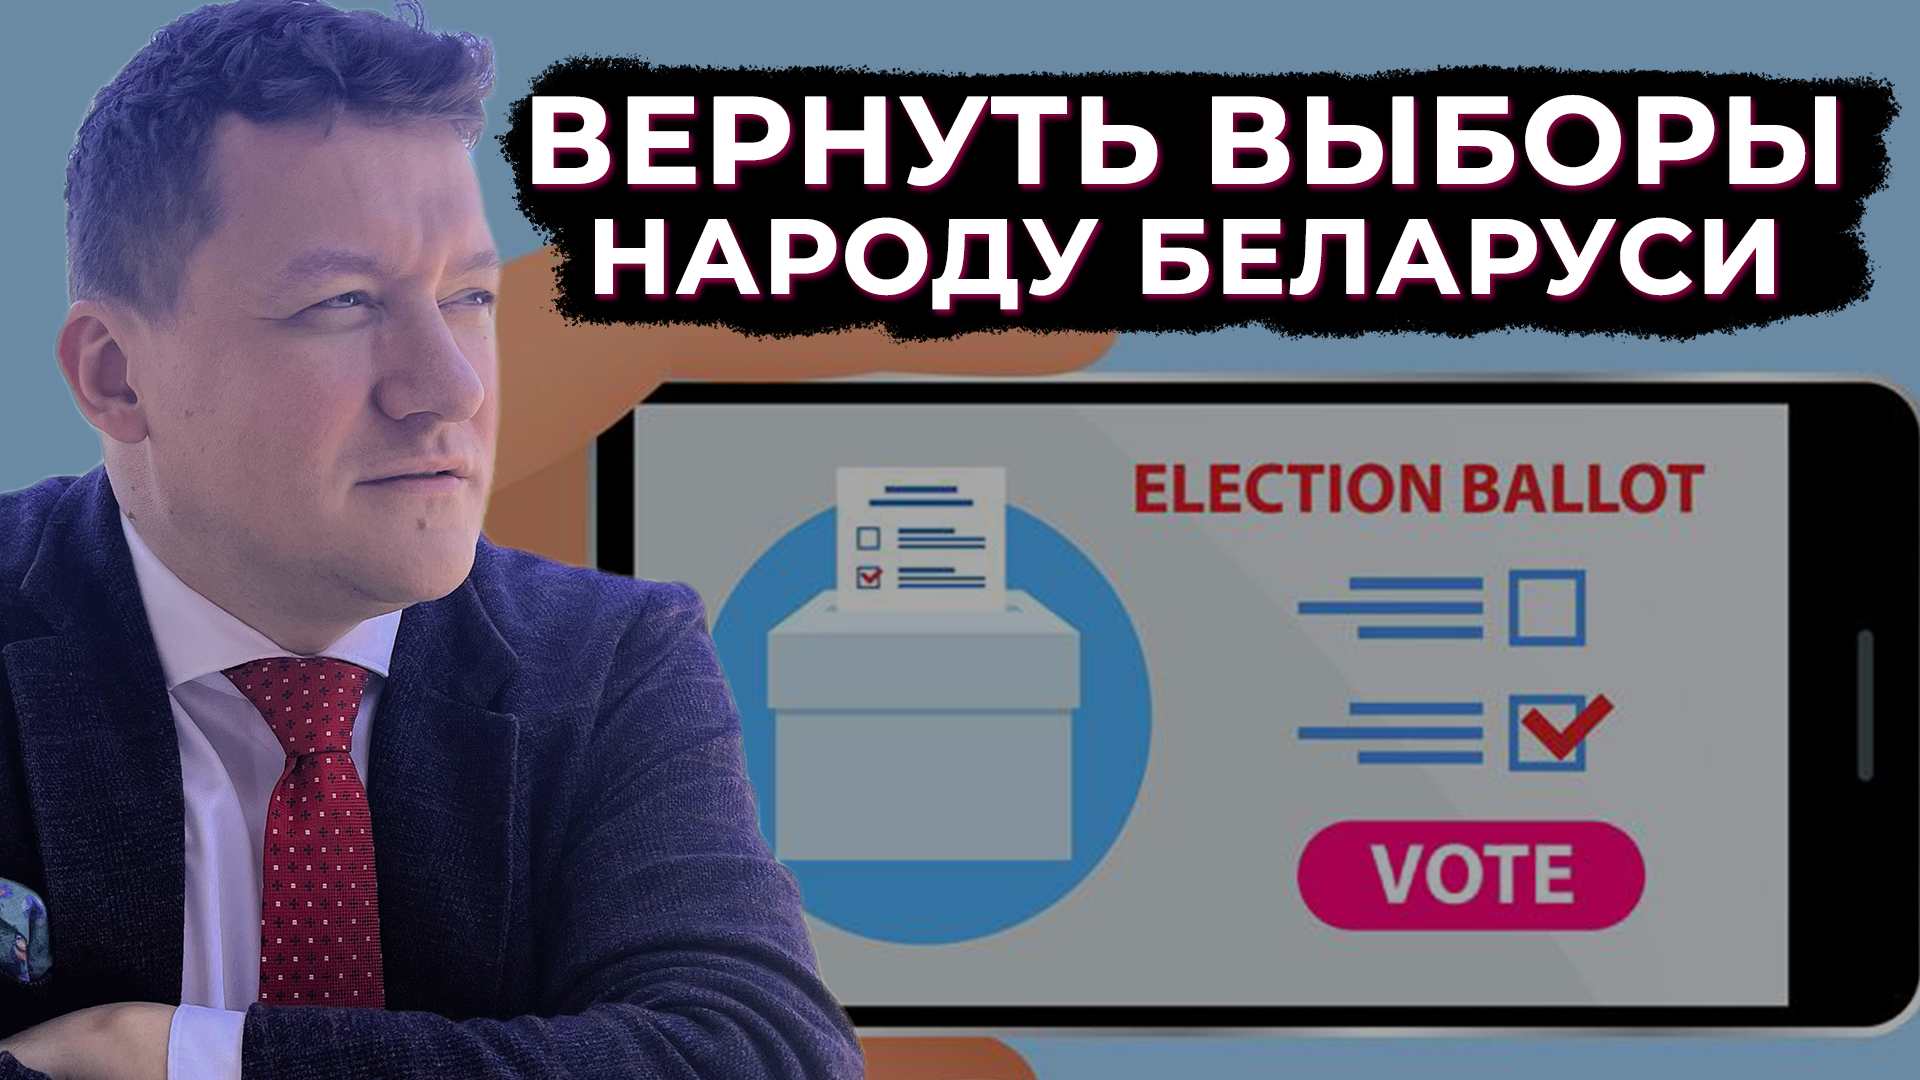 Вернем народу Беларуси выборы. Как проходит электронное голосование в мире